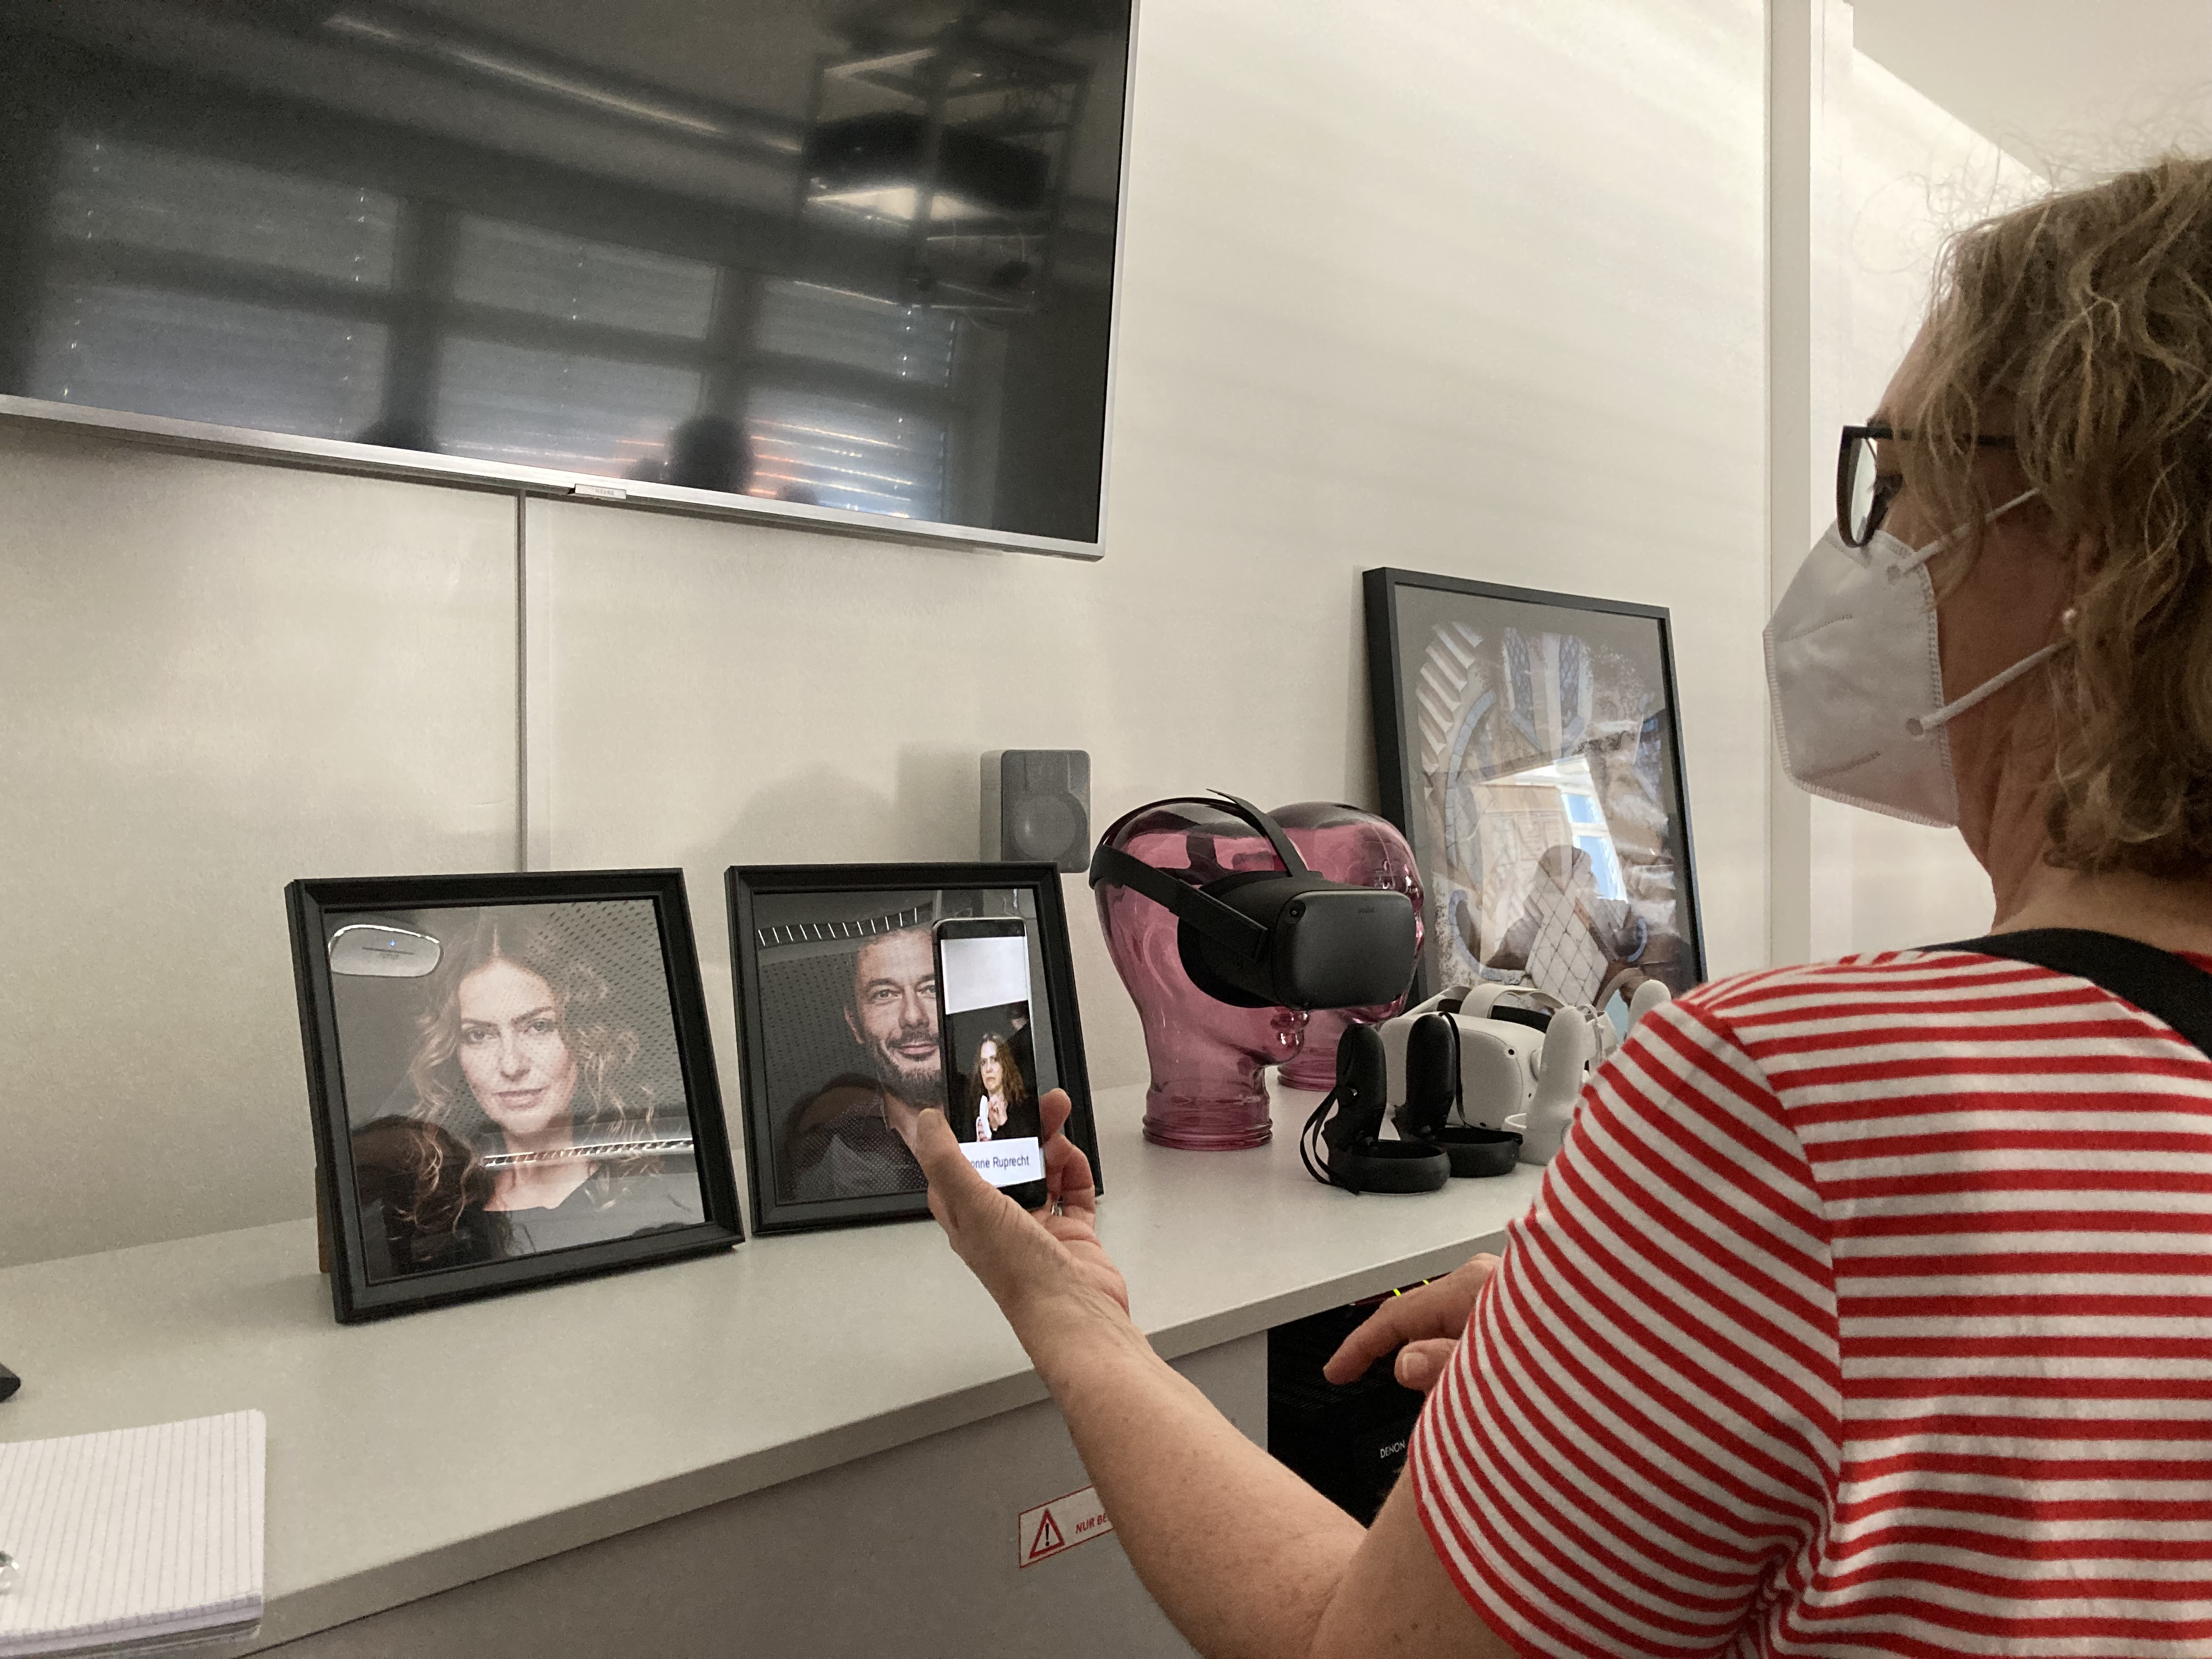 Eine Frau schaut auf ein Smartphone, auf dem ein Foto ein Video einer Frau zu sehen ist. Im Hintergrund ist die Frau aus dem Video auf einem Foto zu sehen.